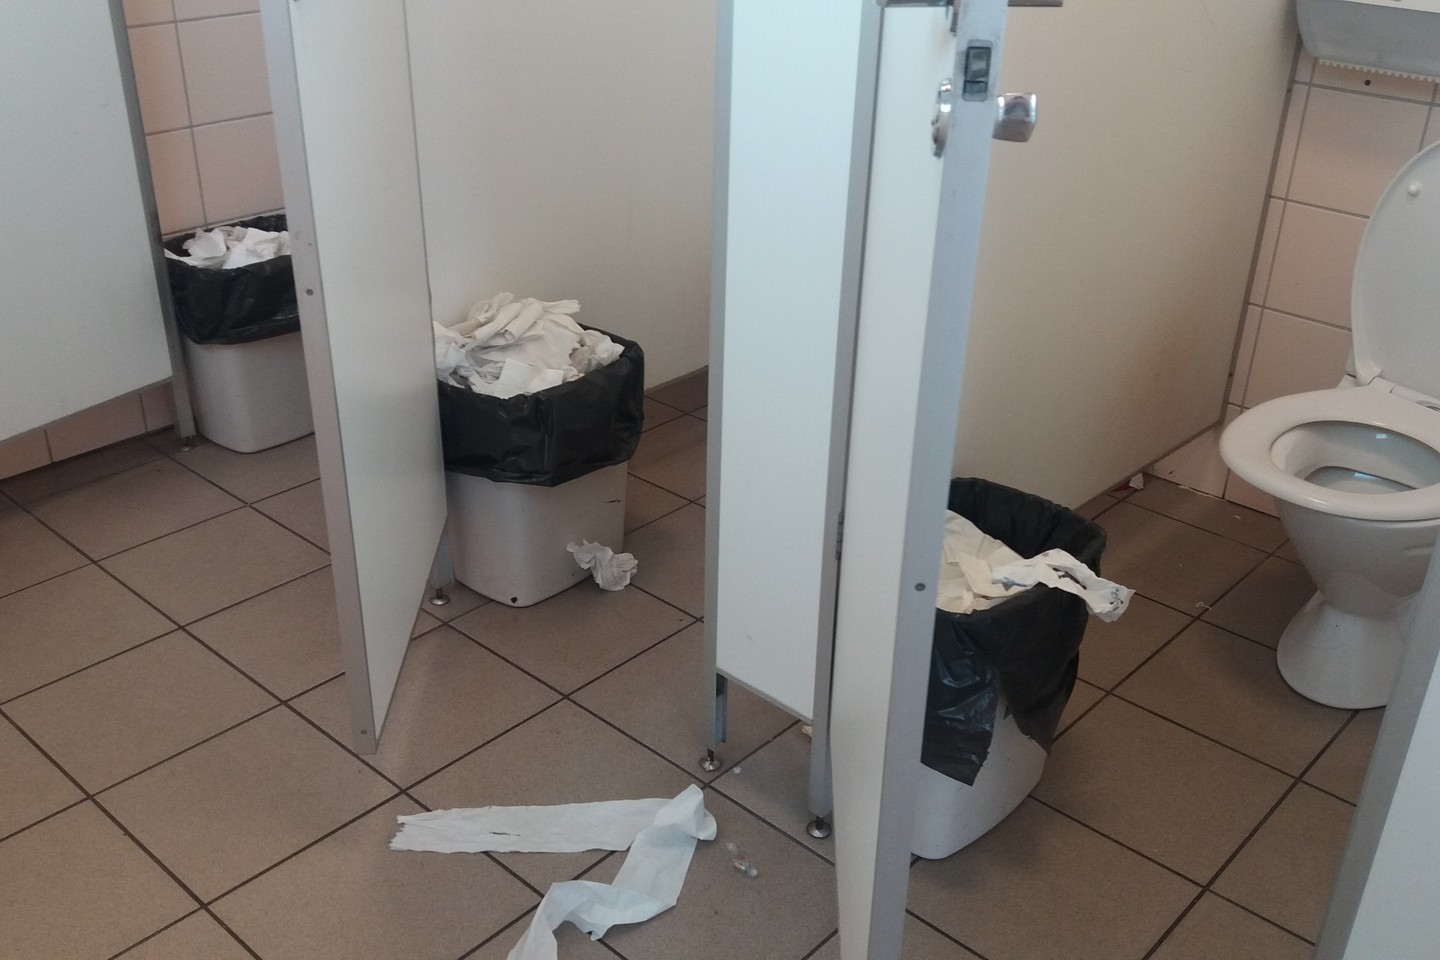  Grįžusi iš užsienio pasibaisėjo tvarka degalinės tualetuose.<br> Autorės nuotr.